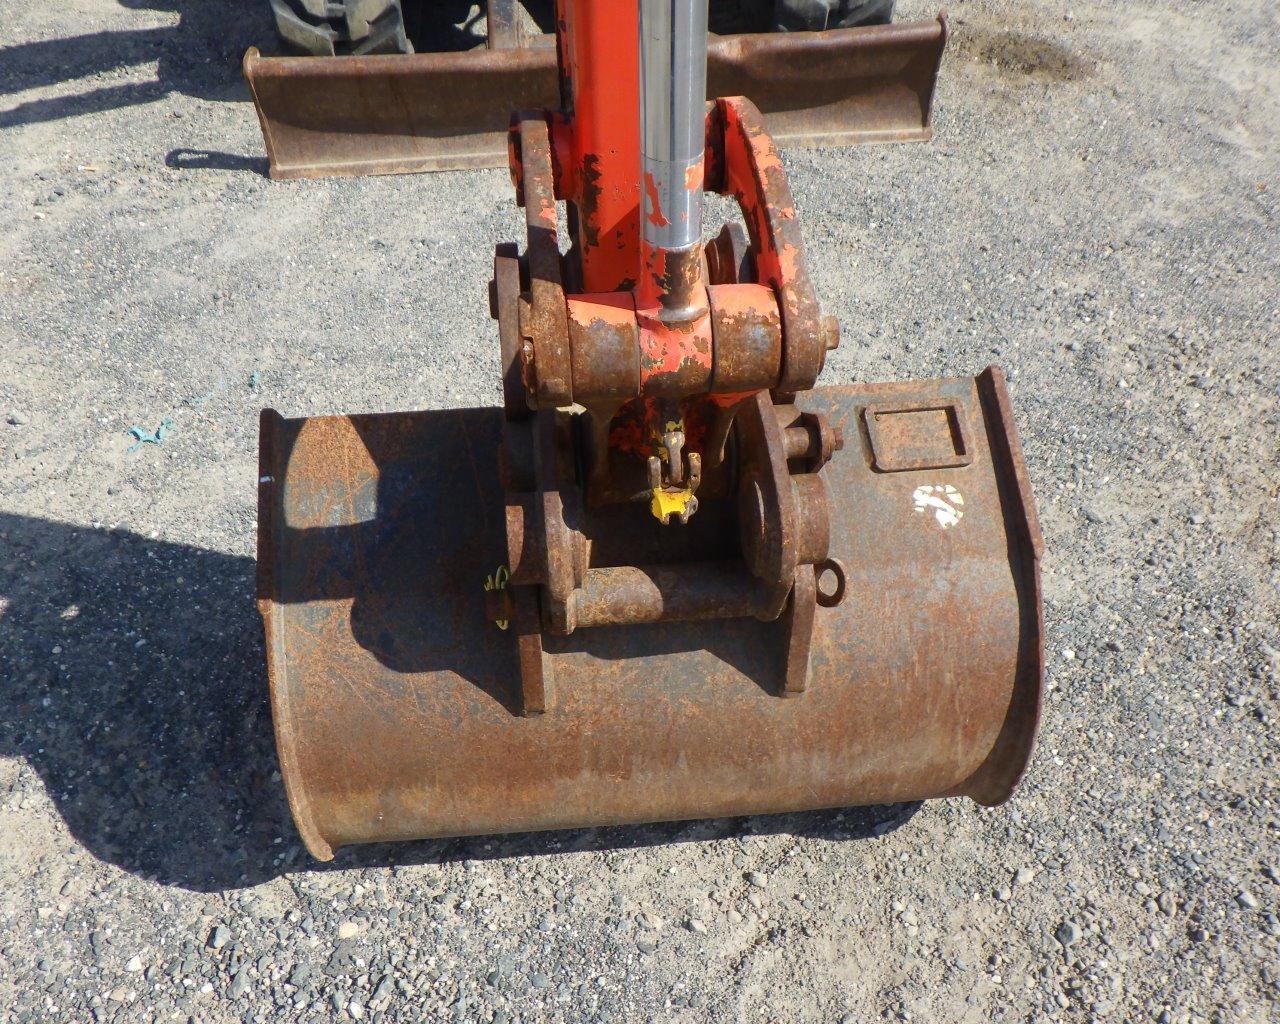 KUBOTA KX71-35 Hyd Excavator w/Bucket   Blade   EROPS s/n:22719